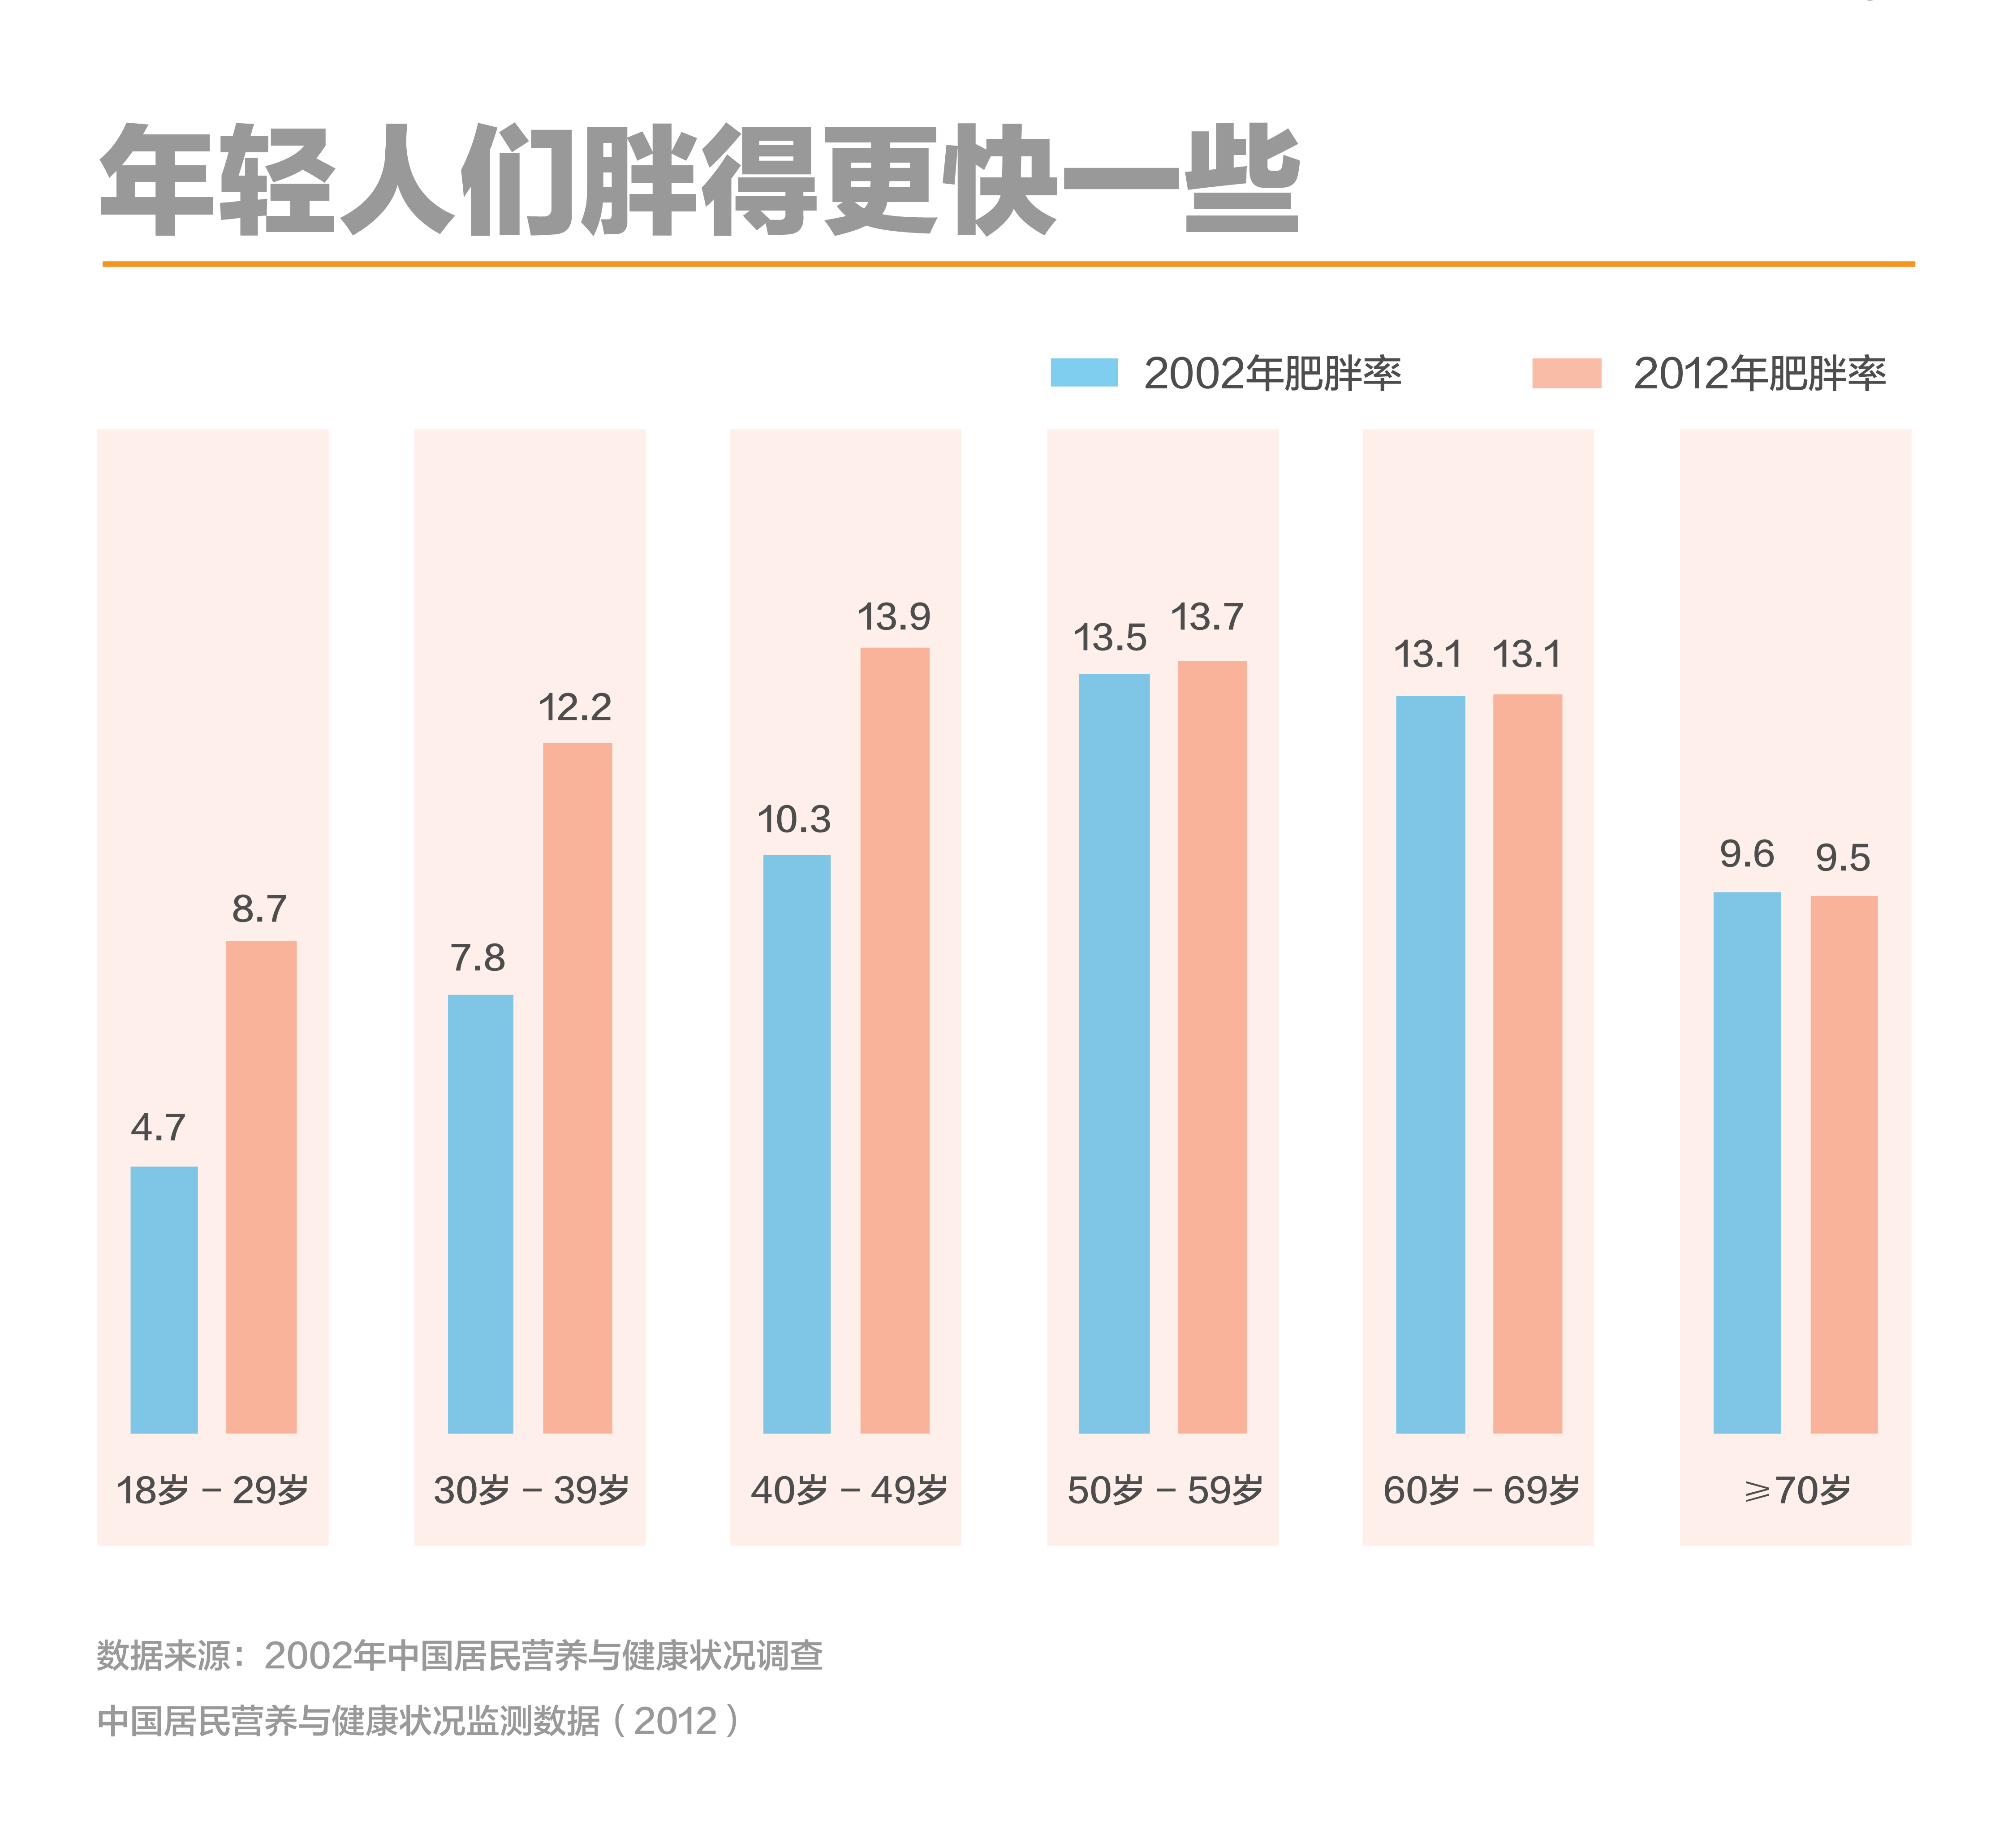 在胖这件事上中国有明显的男女差异